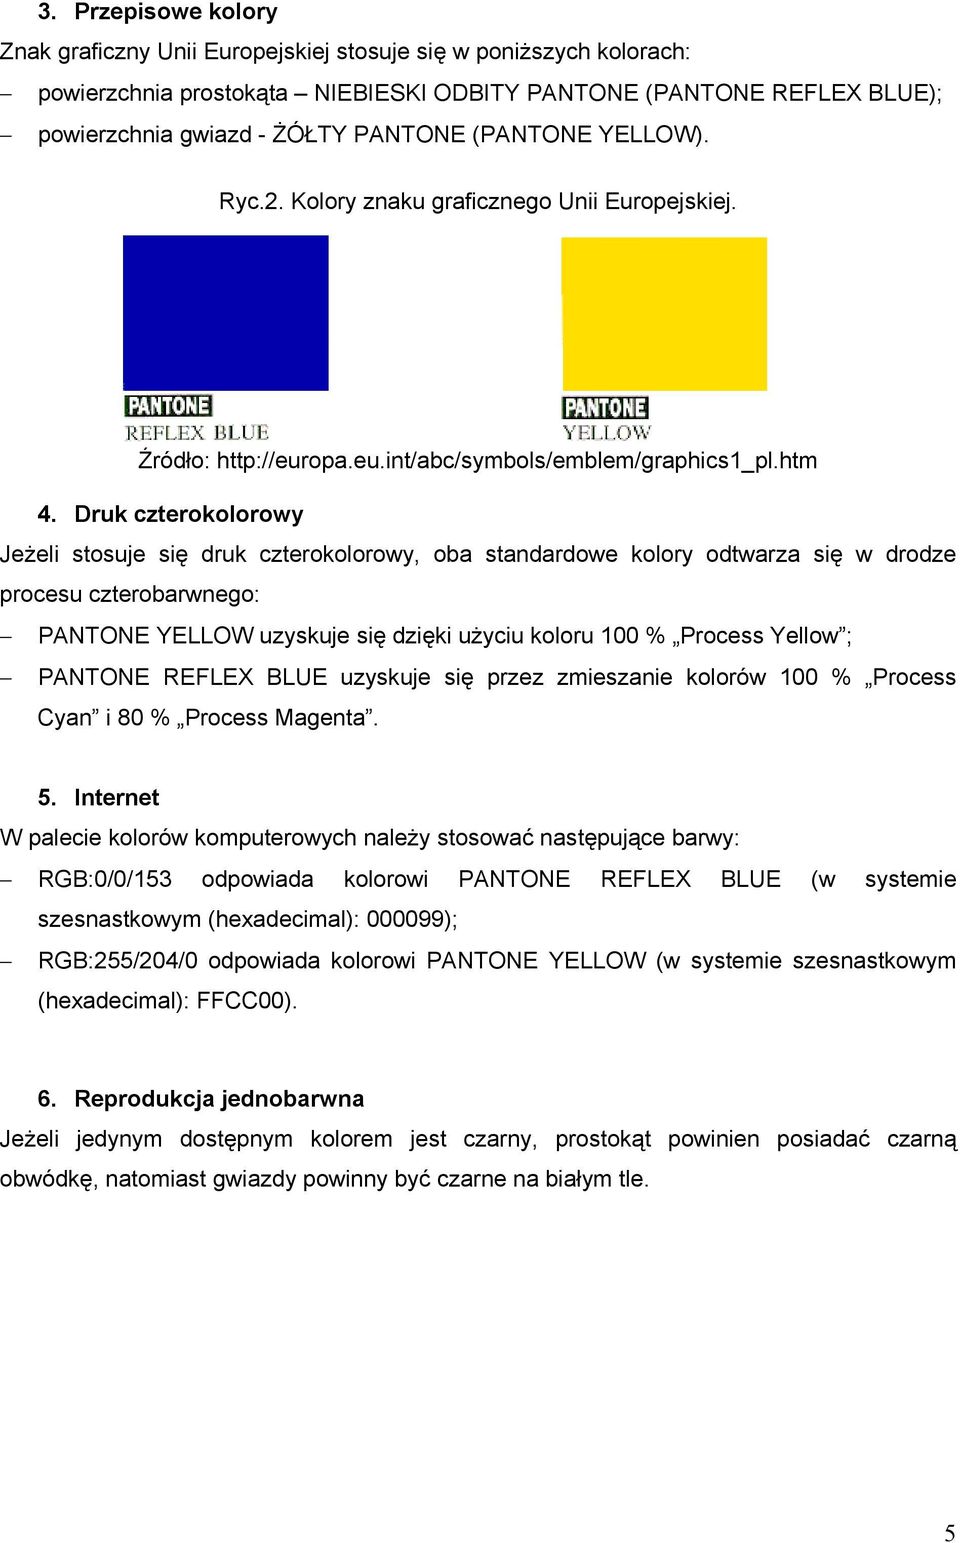 Druk czterokolorowy Jeżeli stosuje się druk czterokolorowy, oba standardowe kolory odtwarza się w drodze procesu czterobarwnego: PANTONE YELLOW uzyskuje się dzięki użyciu koloru 100 % Process Yellow